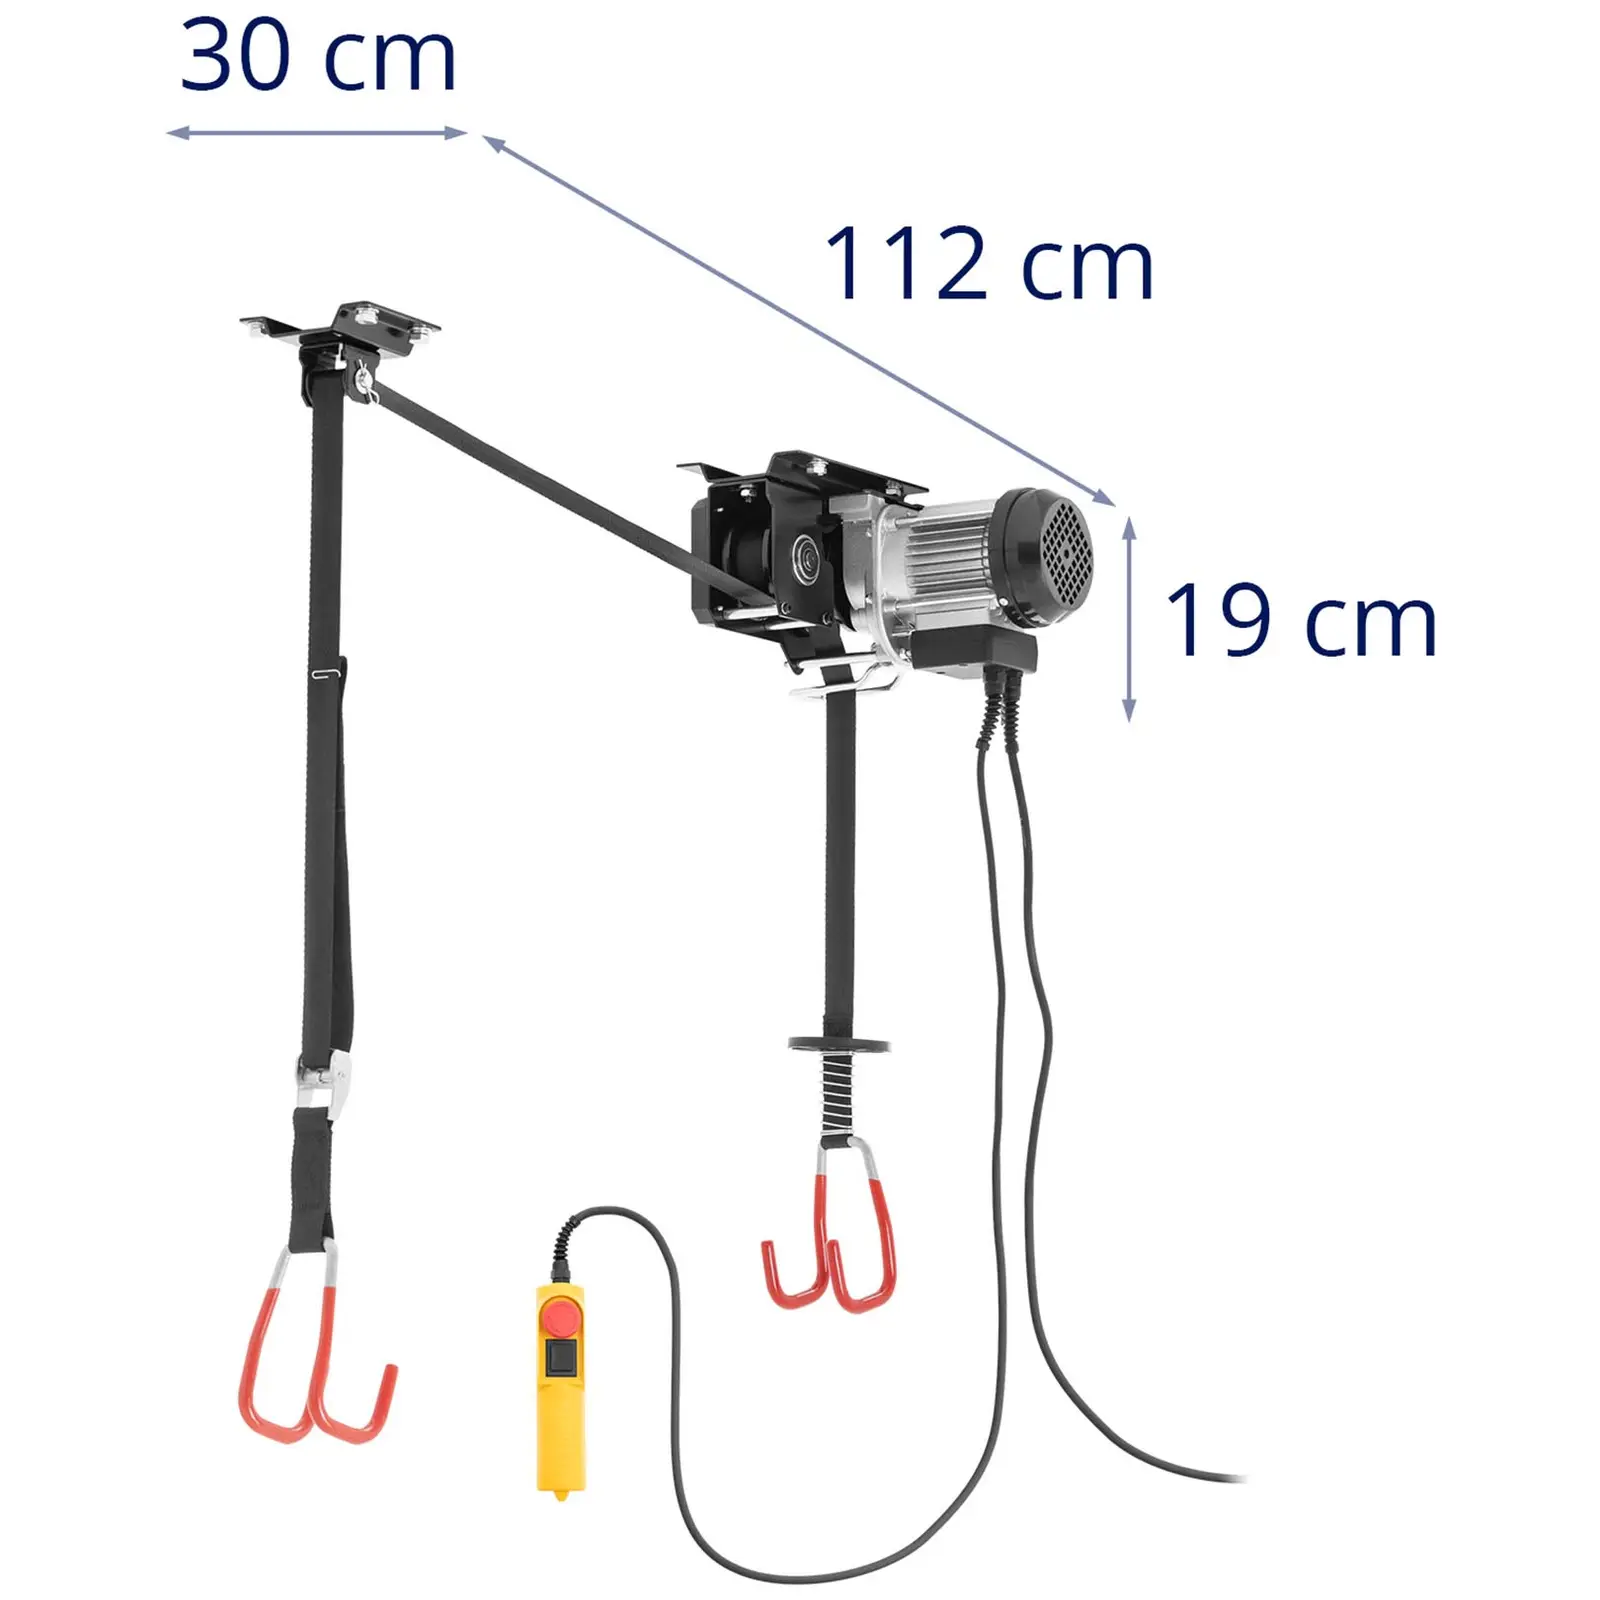 Elevador eléctrico de bicicletas - altura de elevación 3 m - mando a distancia